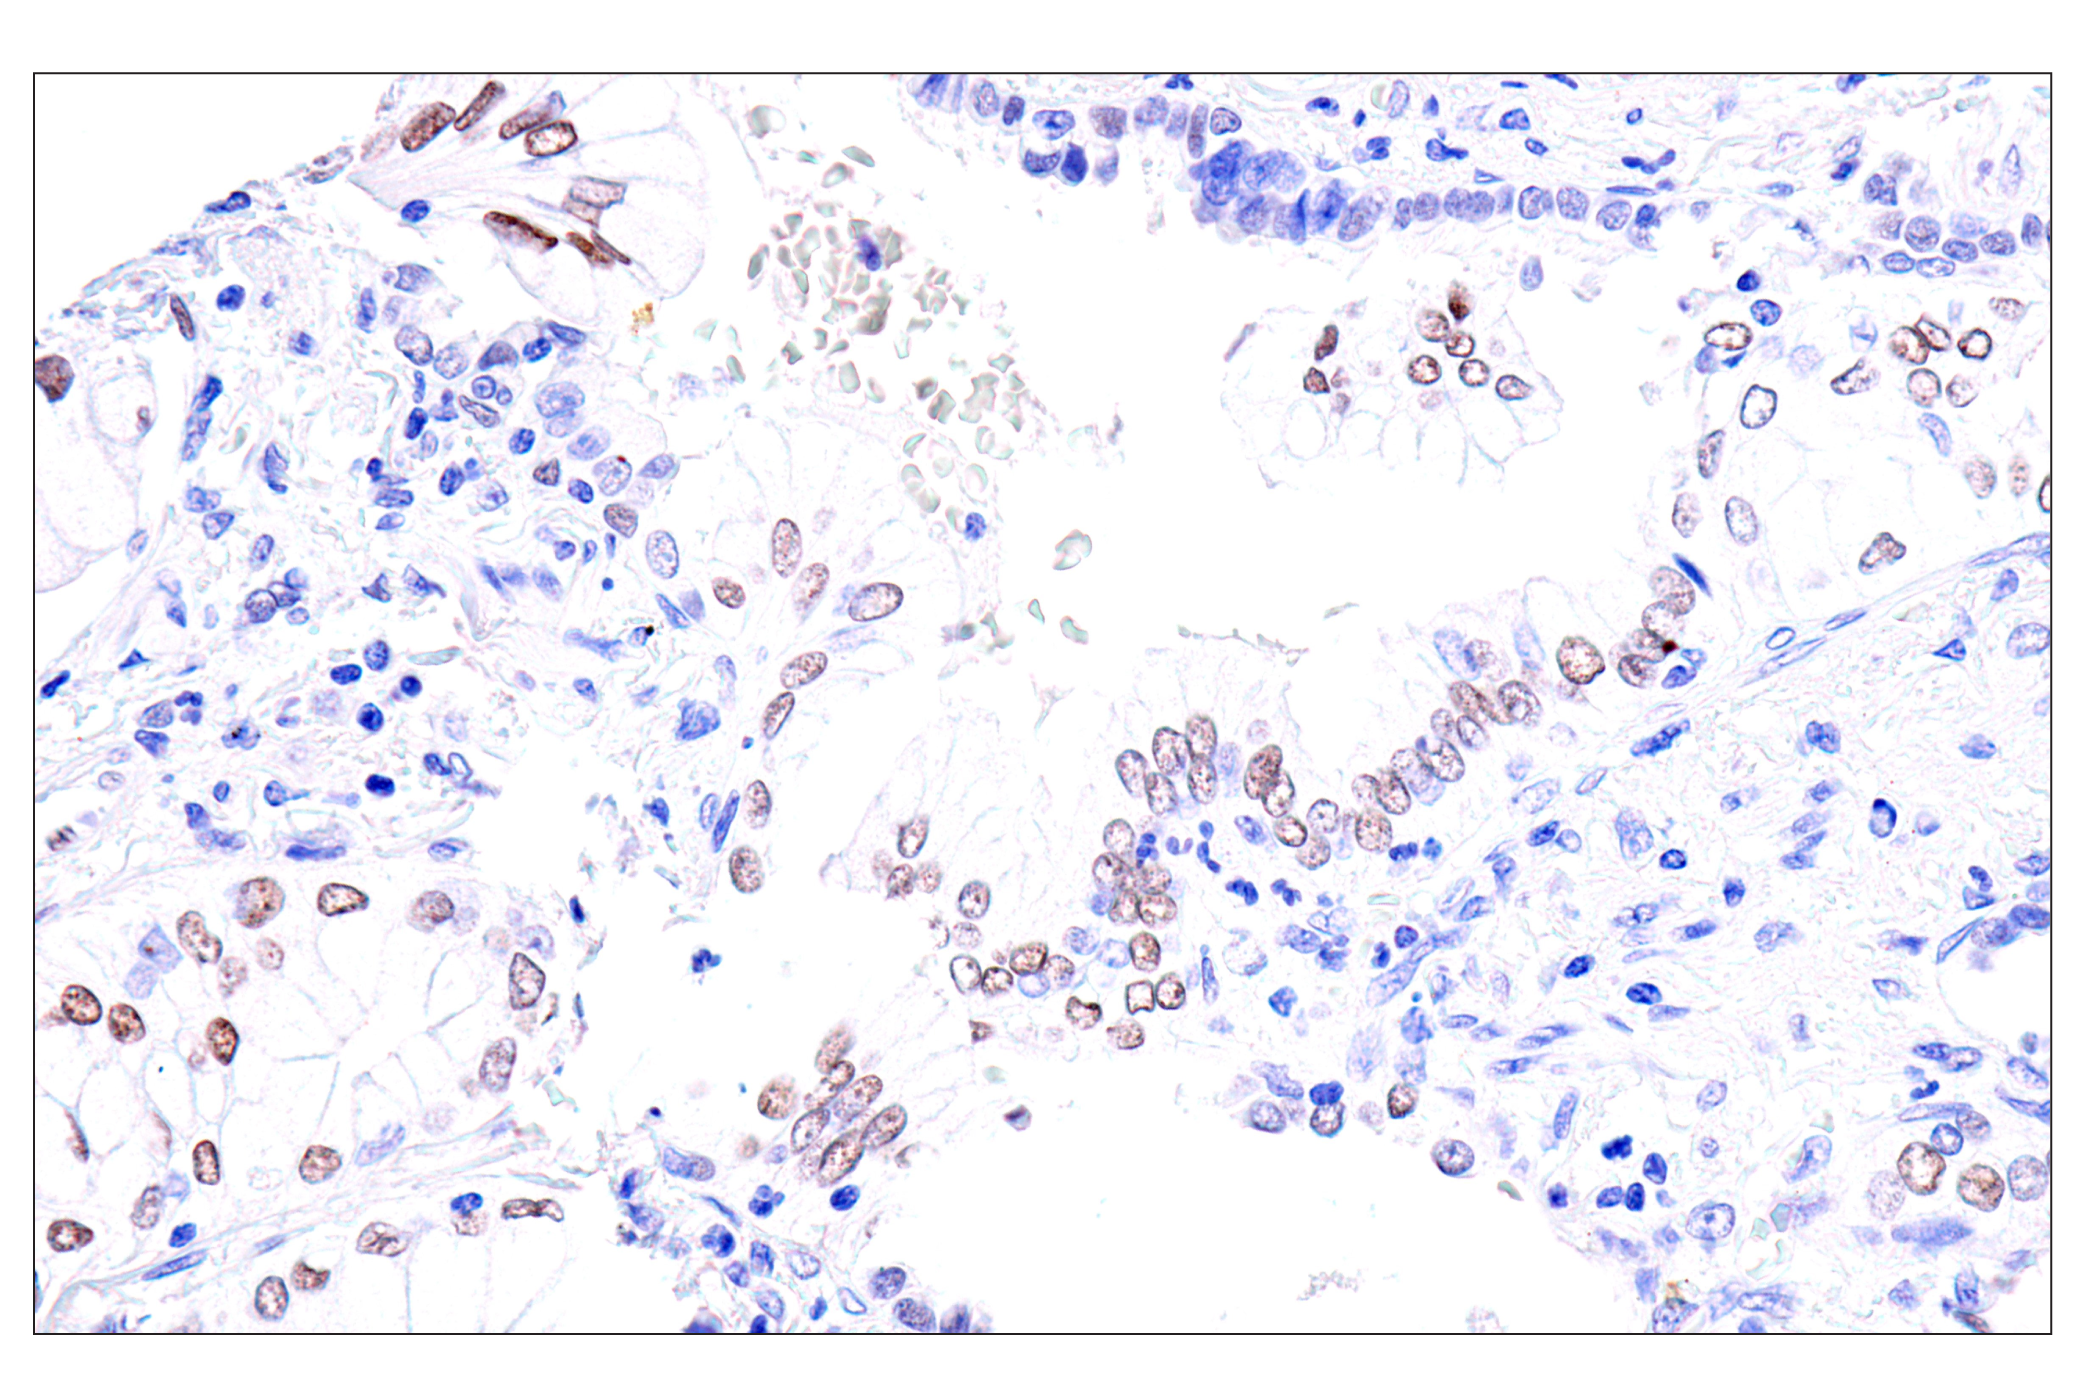  Image 42: GATA Transcription Factor Antibody Sampler Kit